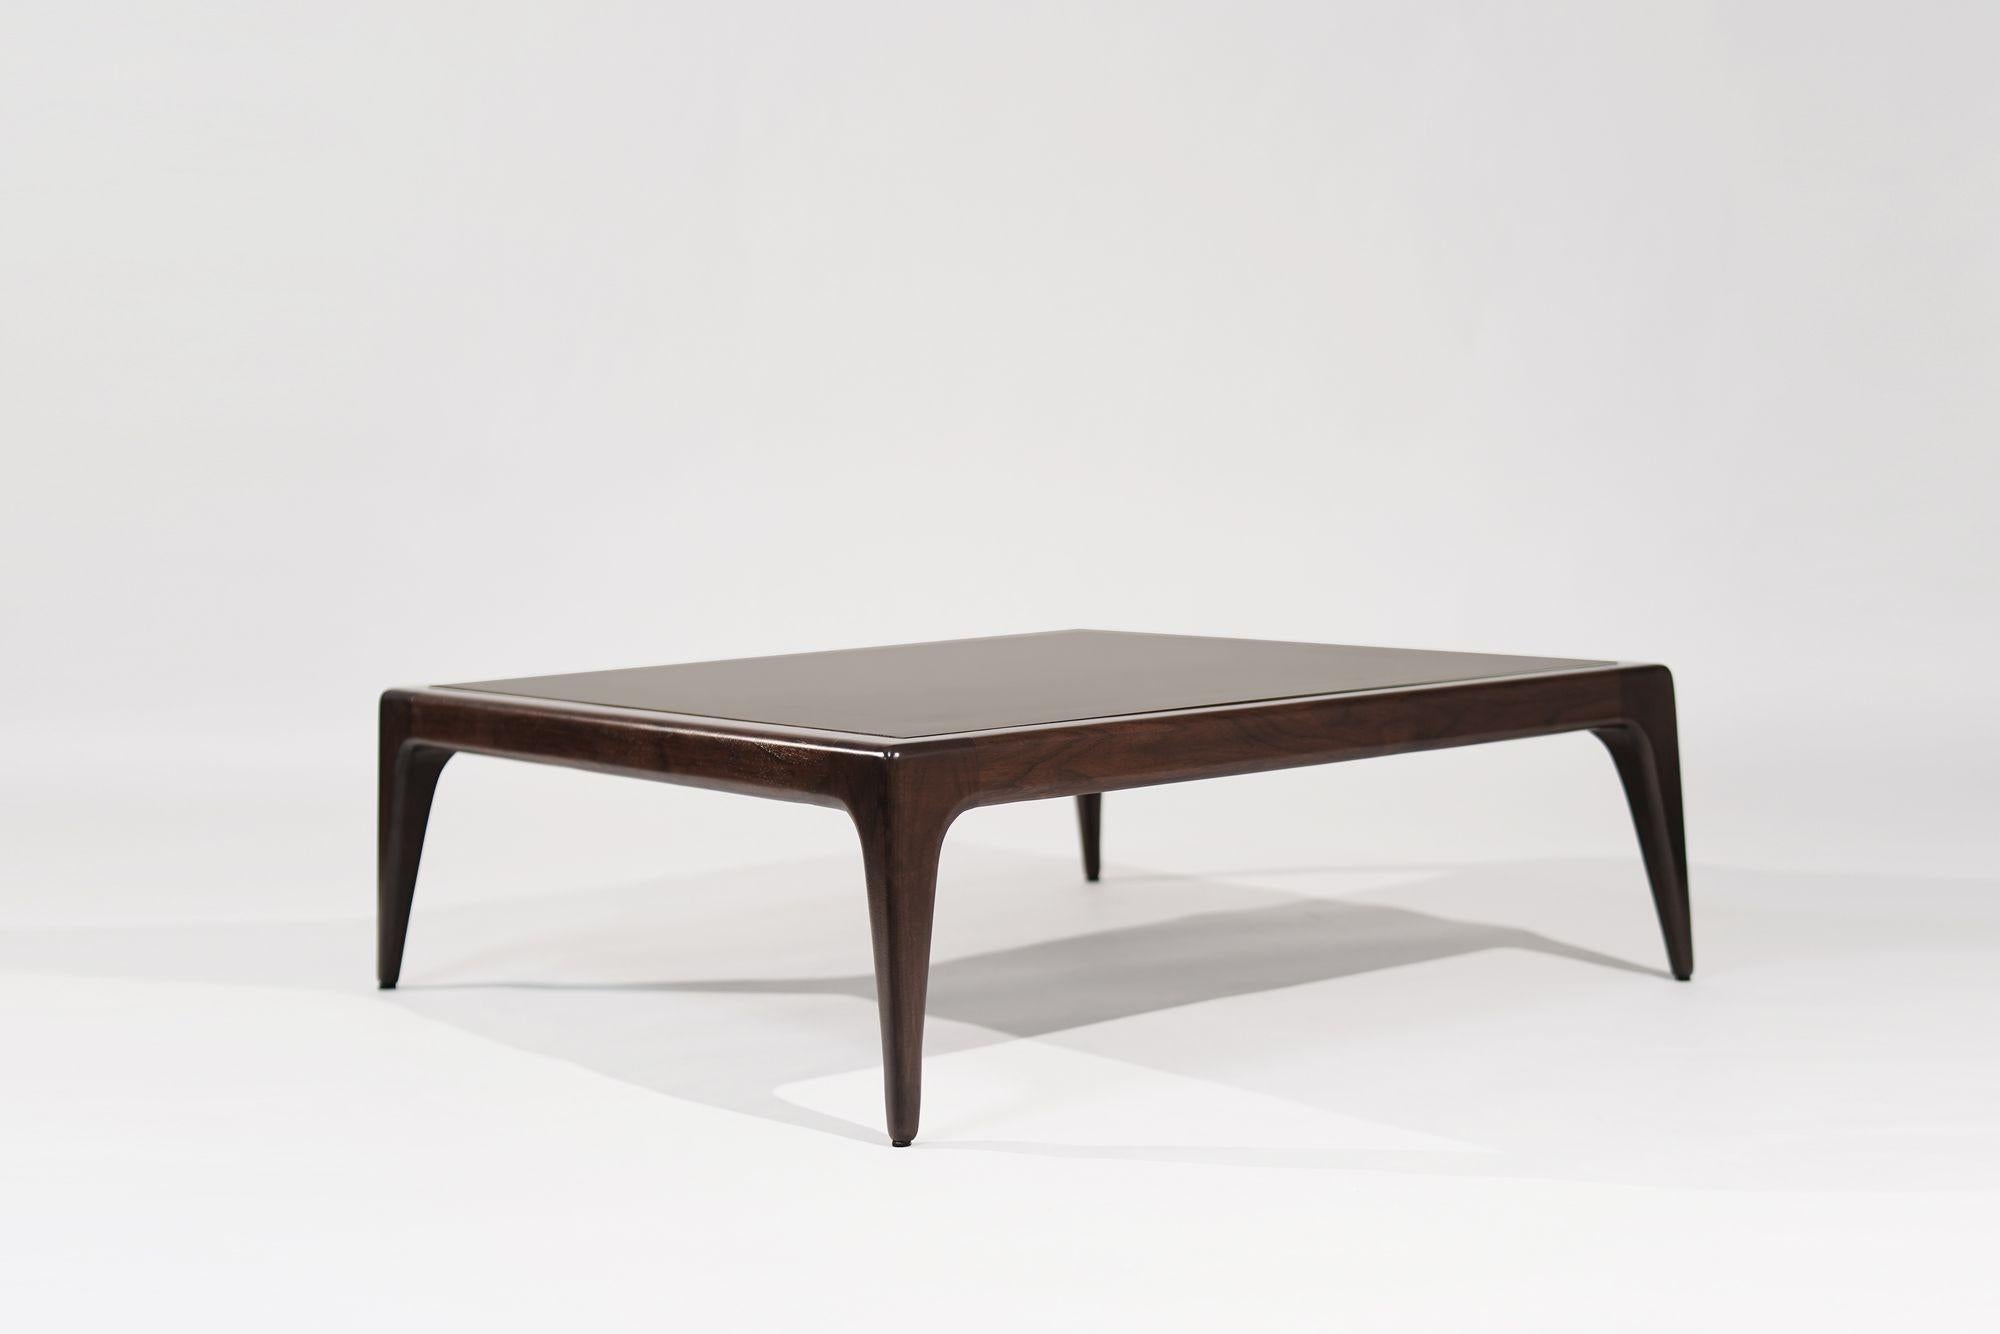 Élevez votre espace de vie avec notre table basse sculpturale, inspirée du style emblématique de Vladimir Kagan. Dotée d'un plateau en bronze laqué, cette pièce unique respire le luxe et la sophistication. Fabriquée à partir de matériaux de haute